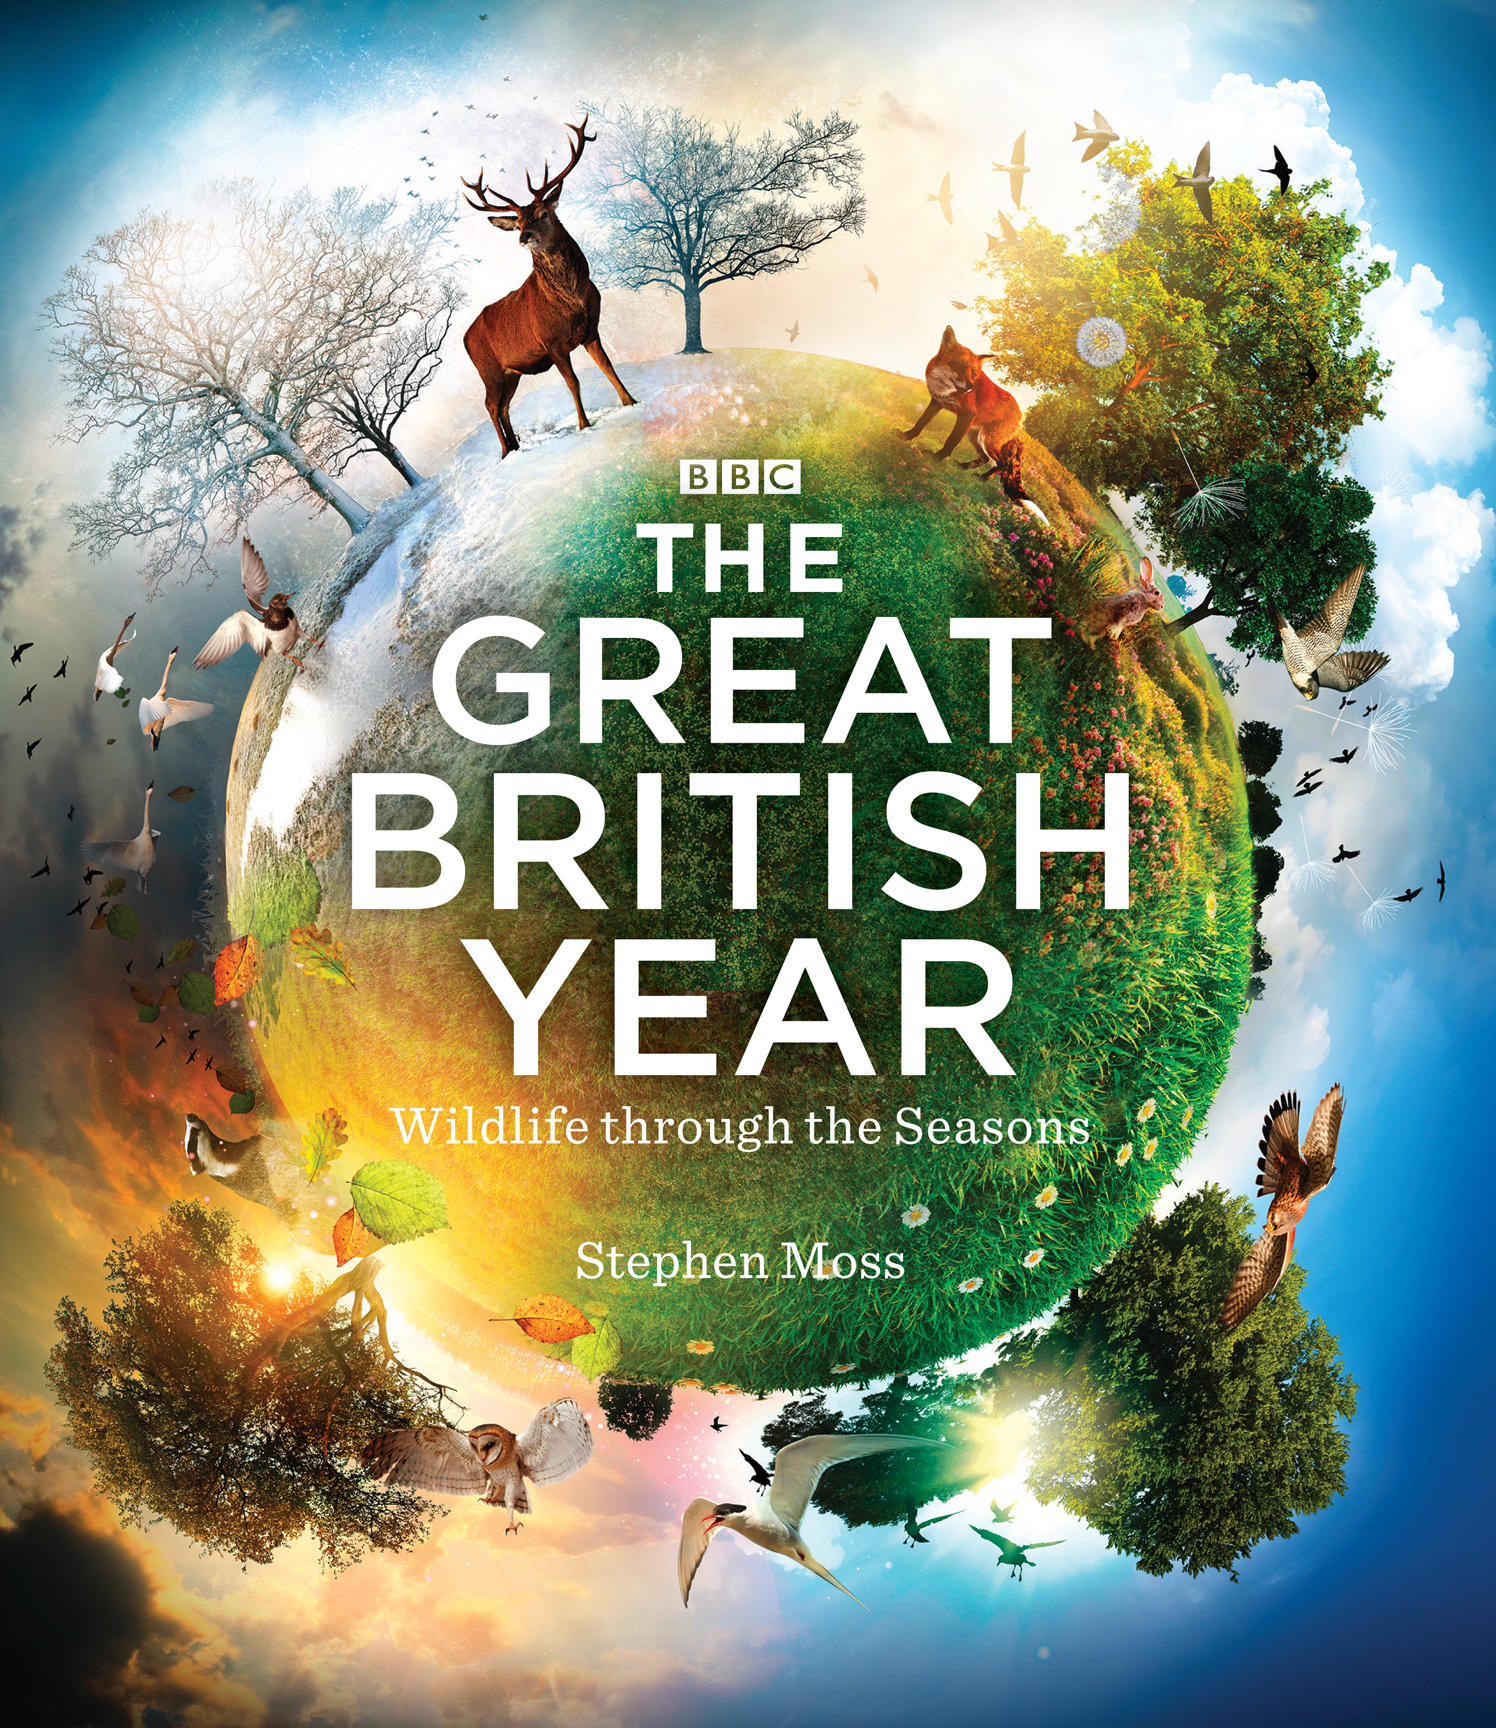 The Great British Year / BBC Books